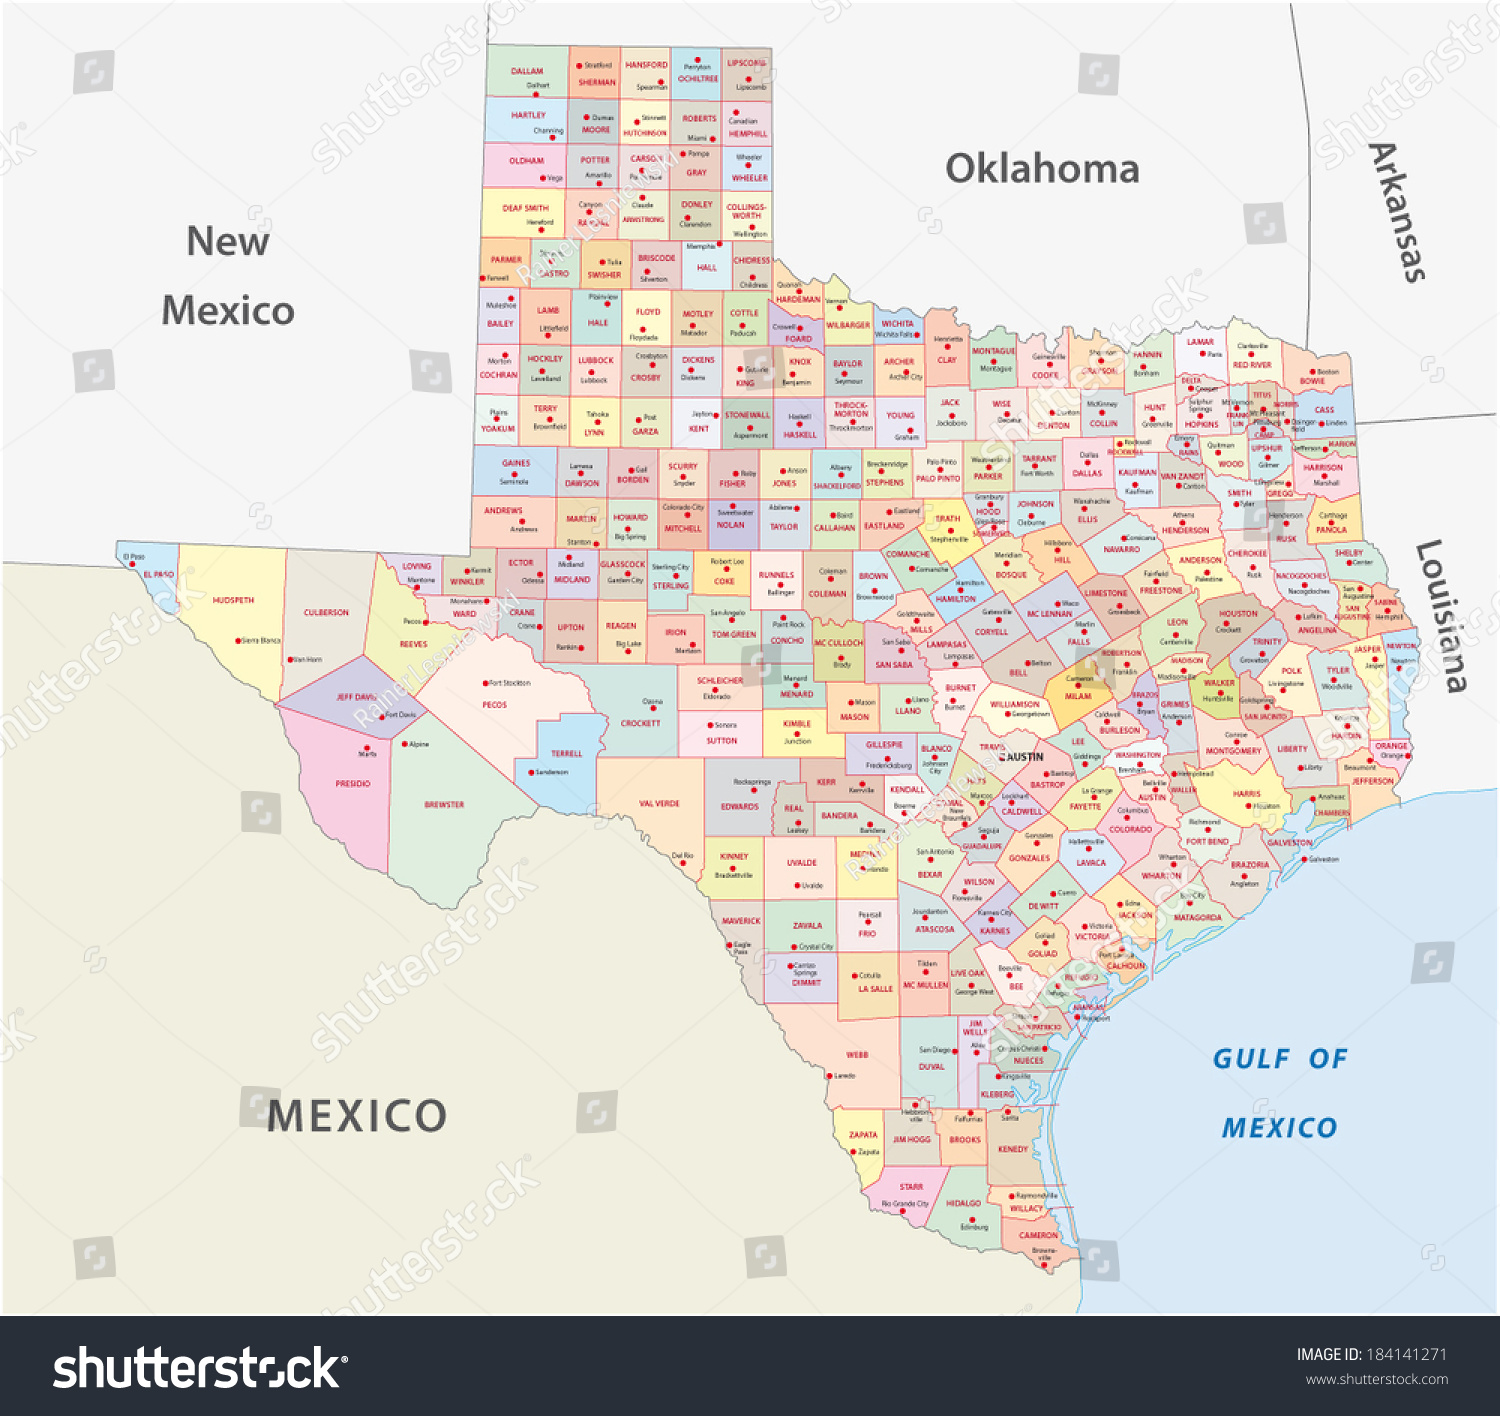 texas county map - Royalty Free Stock Vector 184141271 - Avopix.com